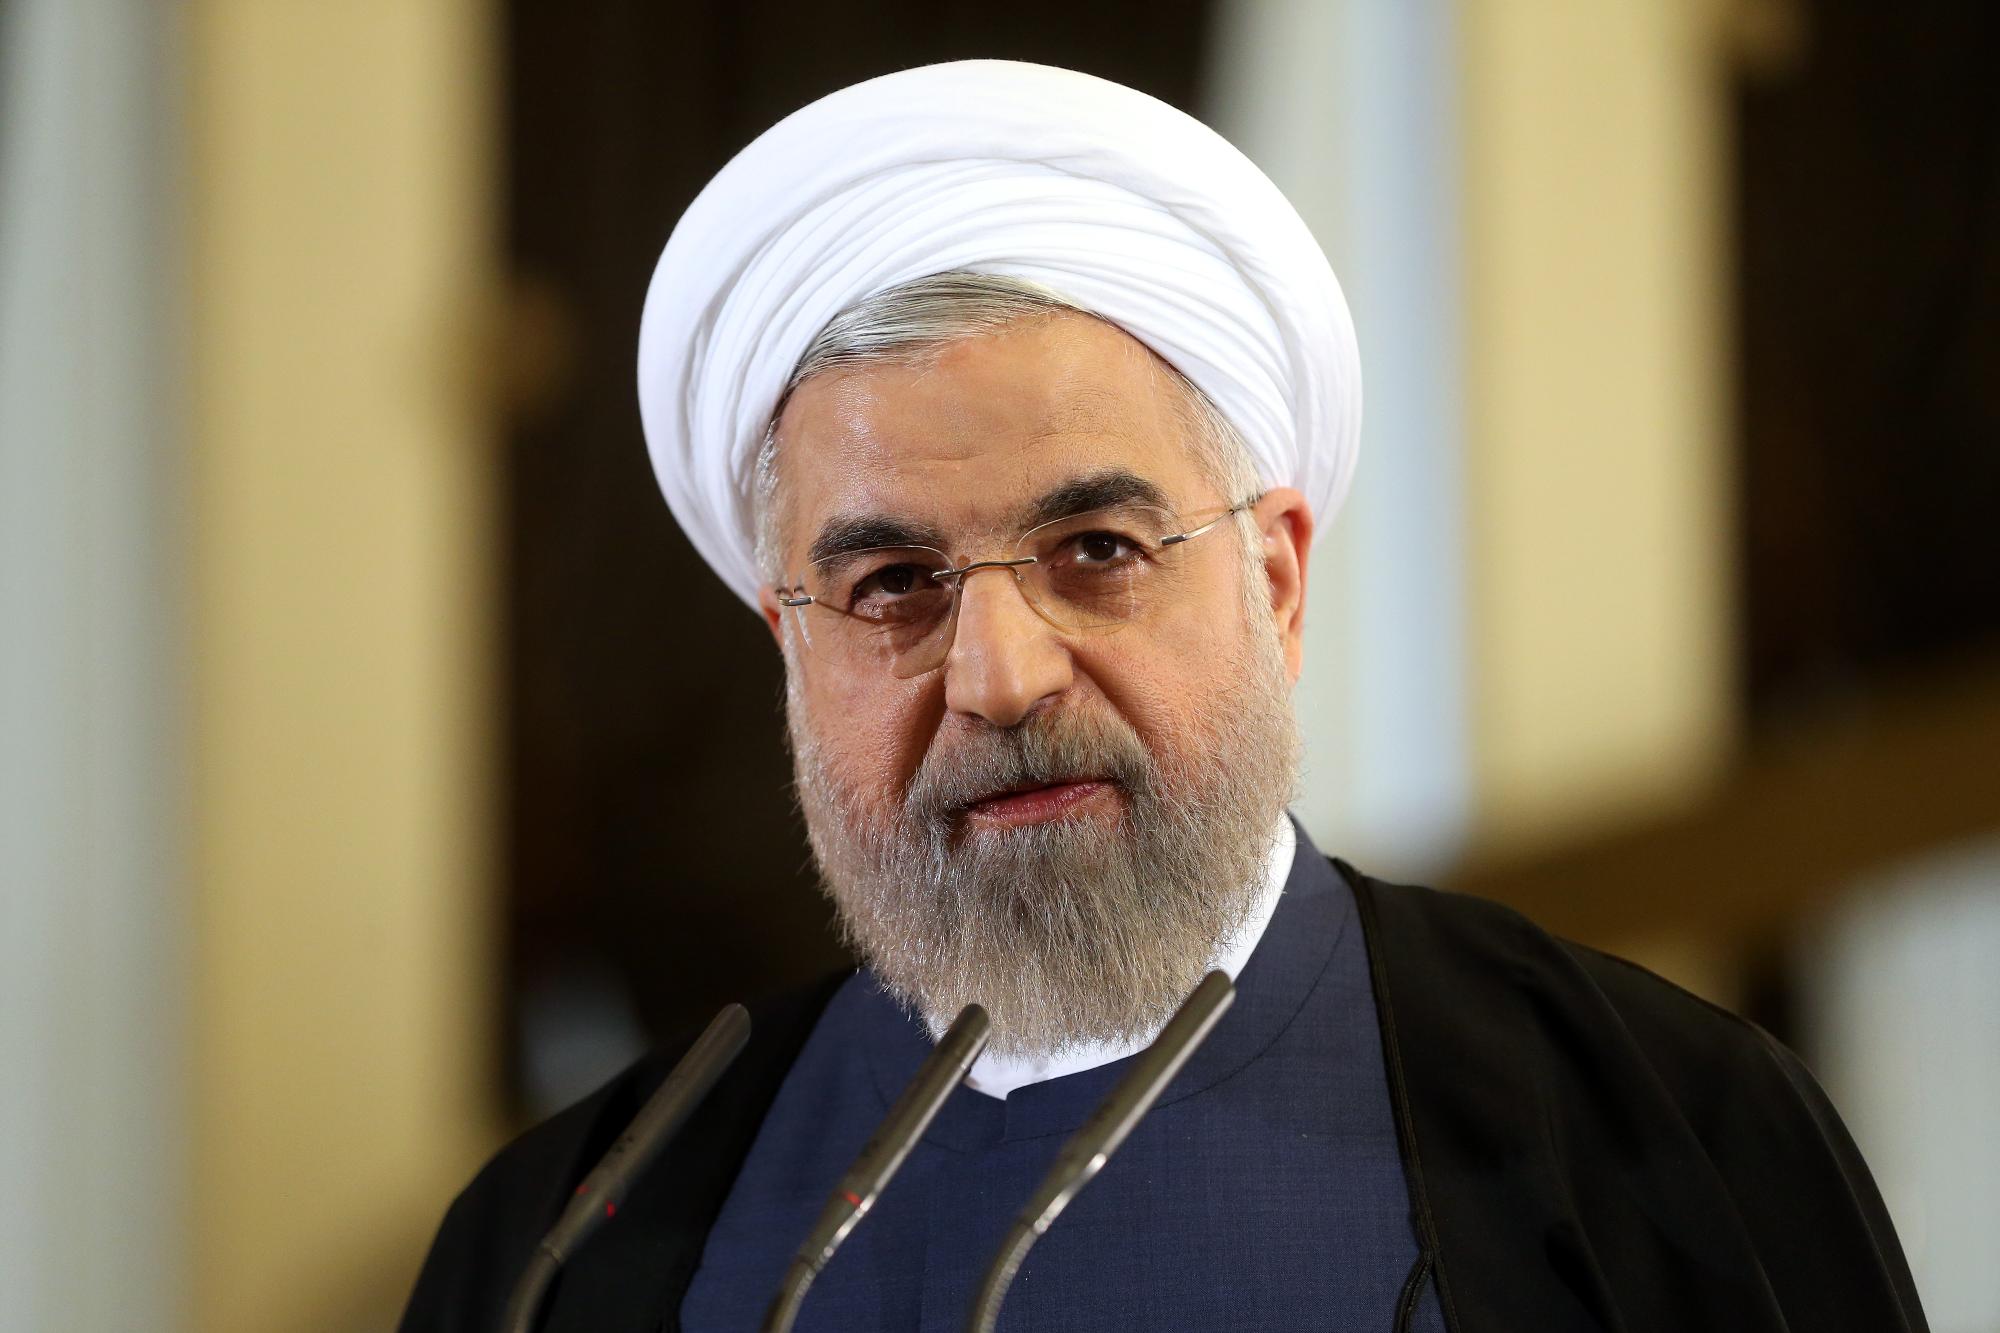 Róháni: Washington felajánlotta, hogy feloldja az összes, Iránra kirótt szankciót, ha Teherán tárgyal vele